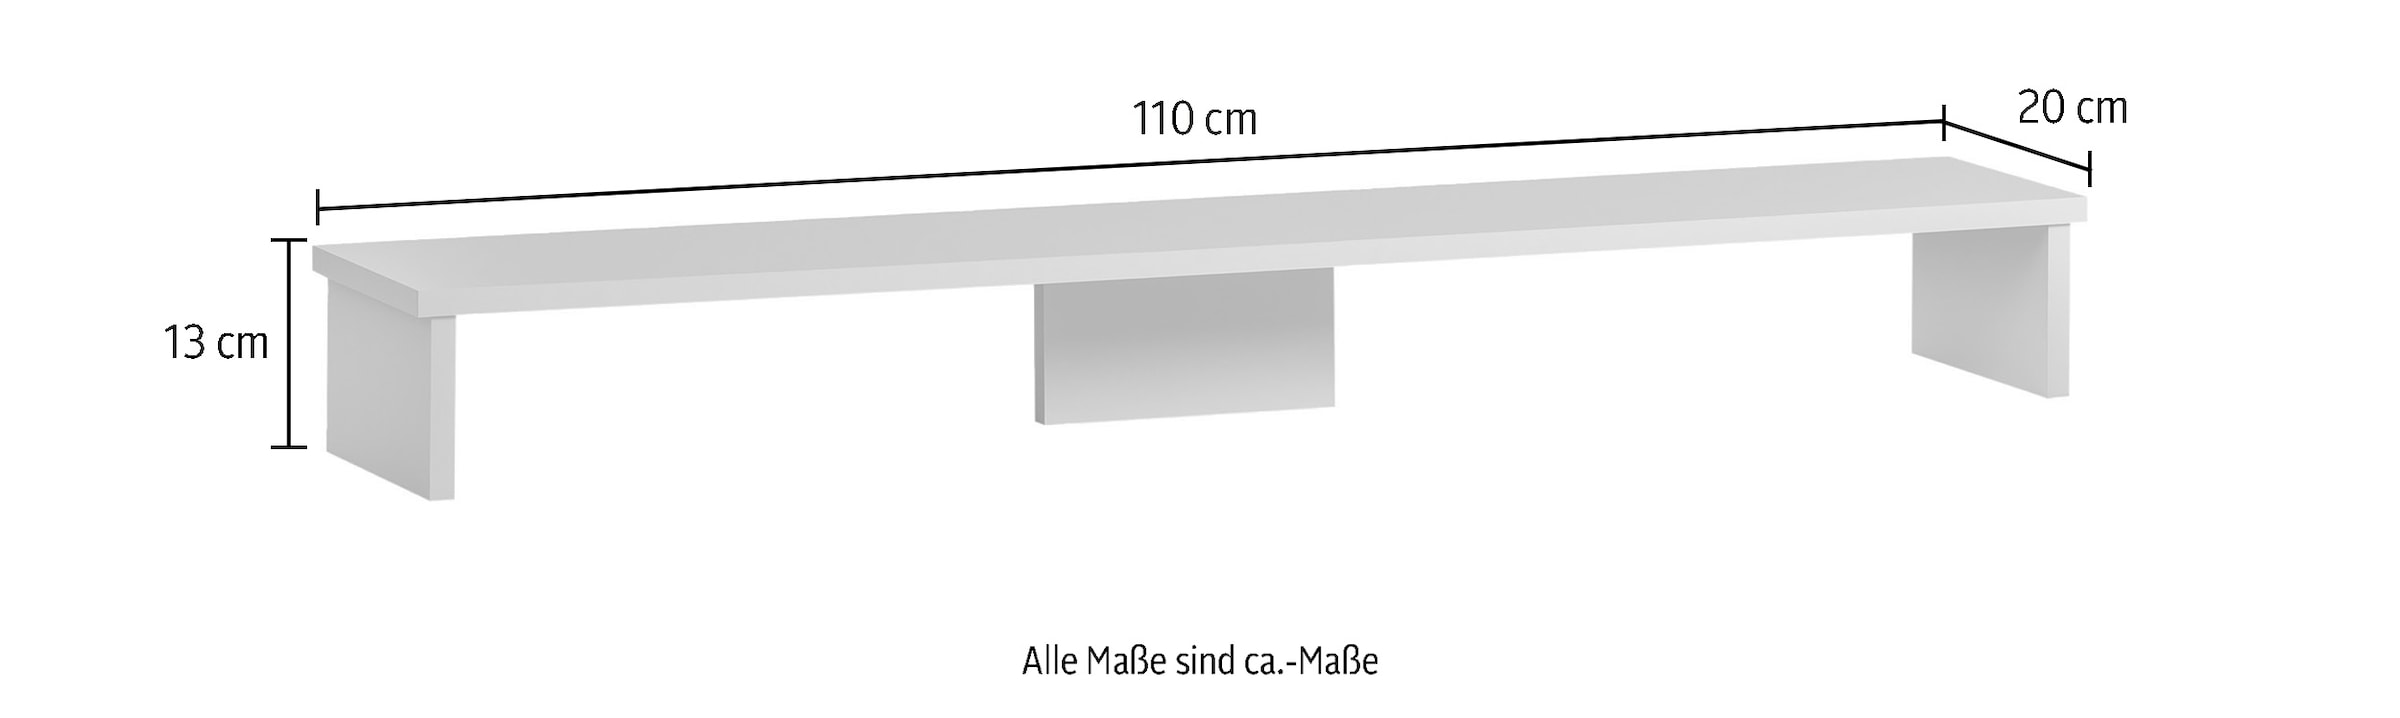 Schildmeyer Schreibtischaufsatz »Baku«, Bildschirmaufsatz, Breite 110 cm, Made in Germany